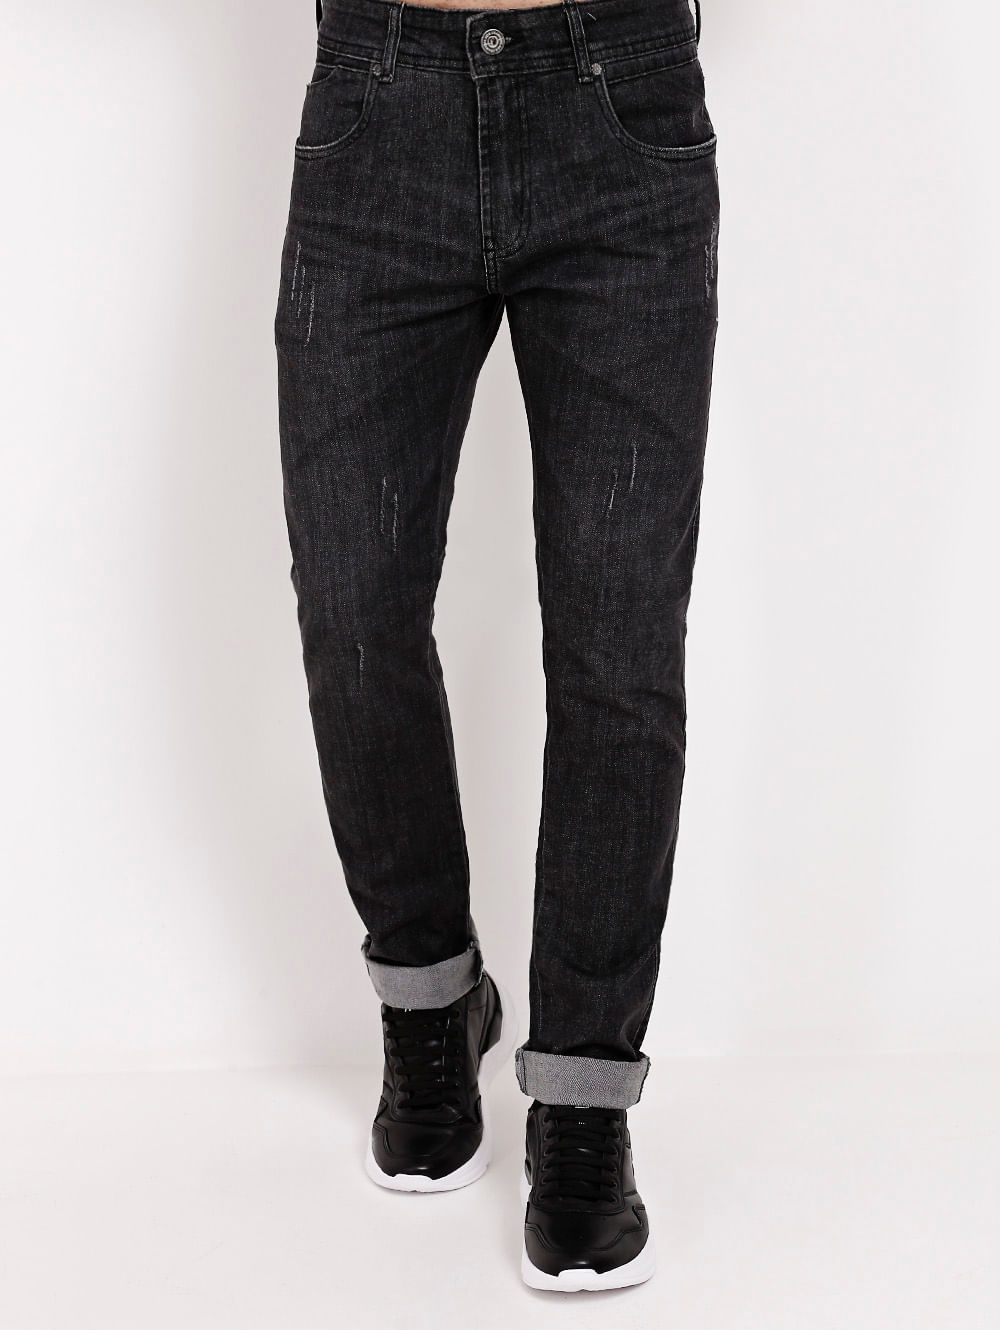 calça jeans preta masculina